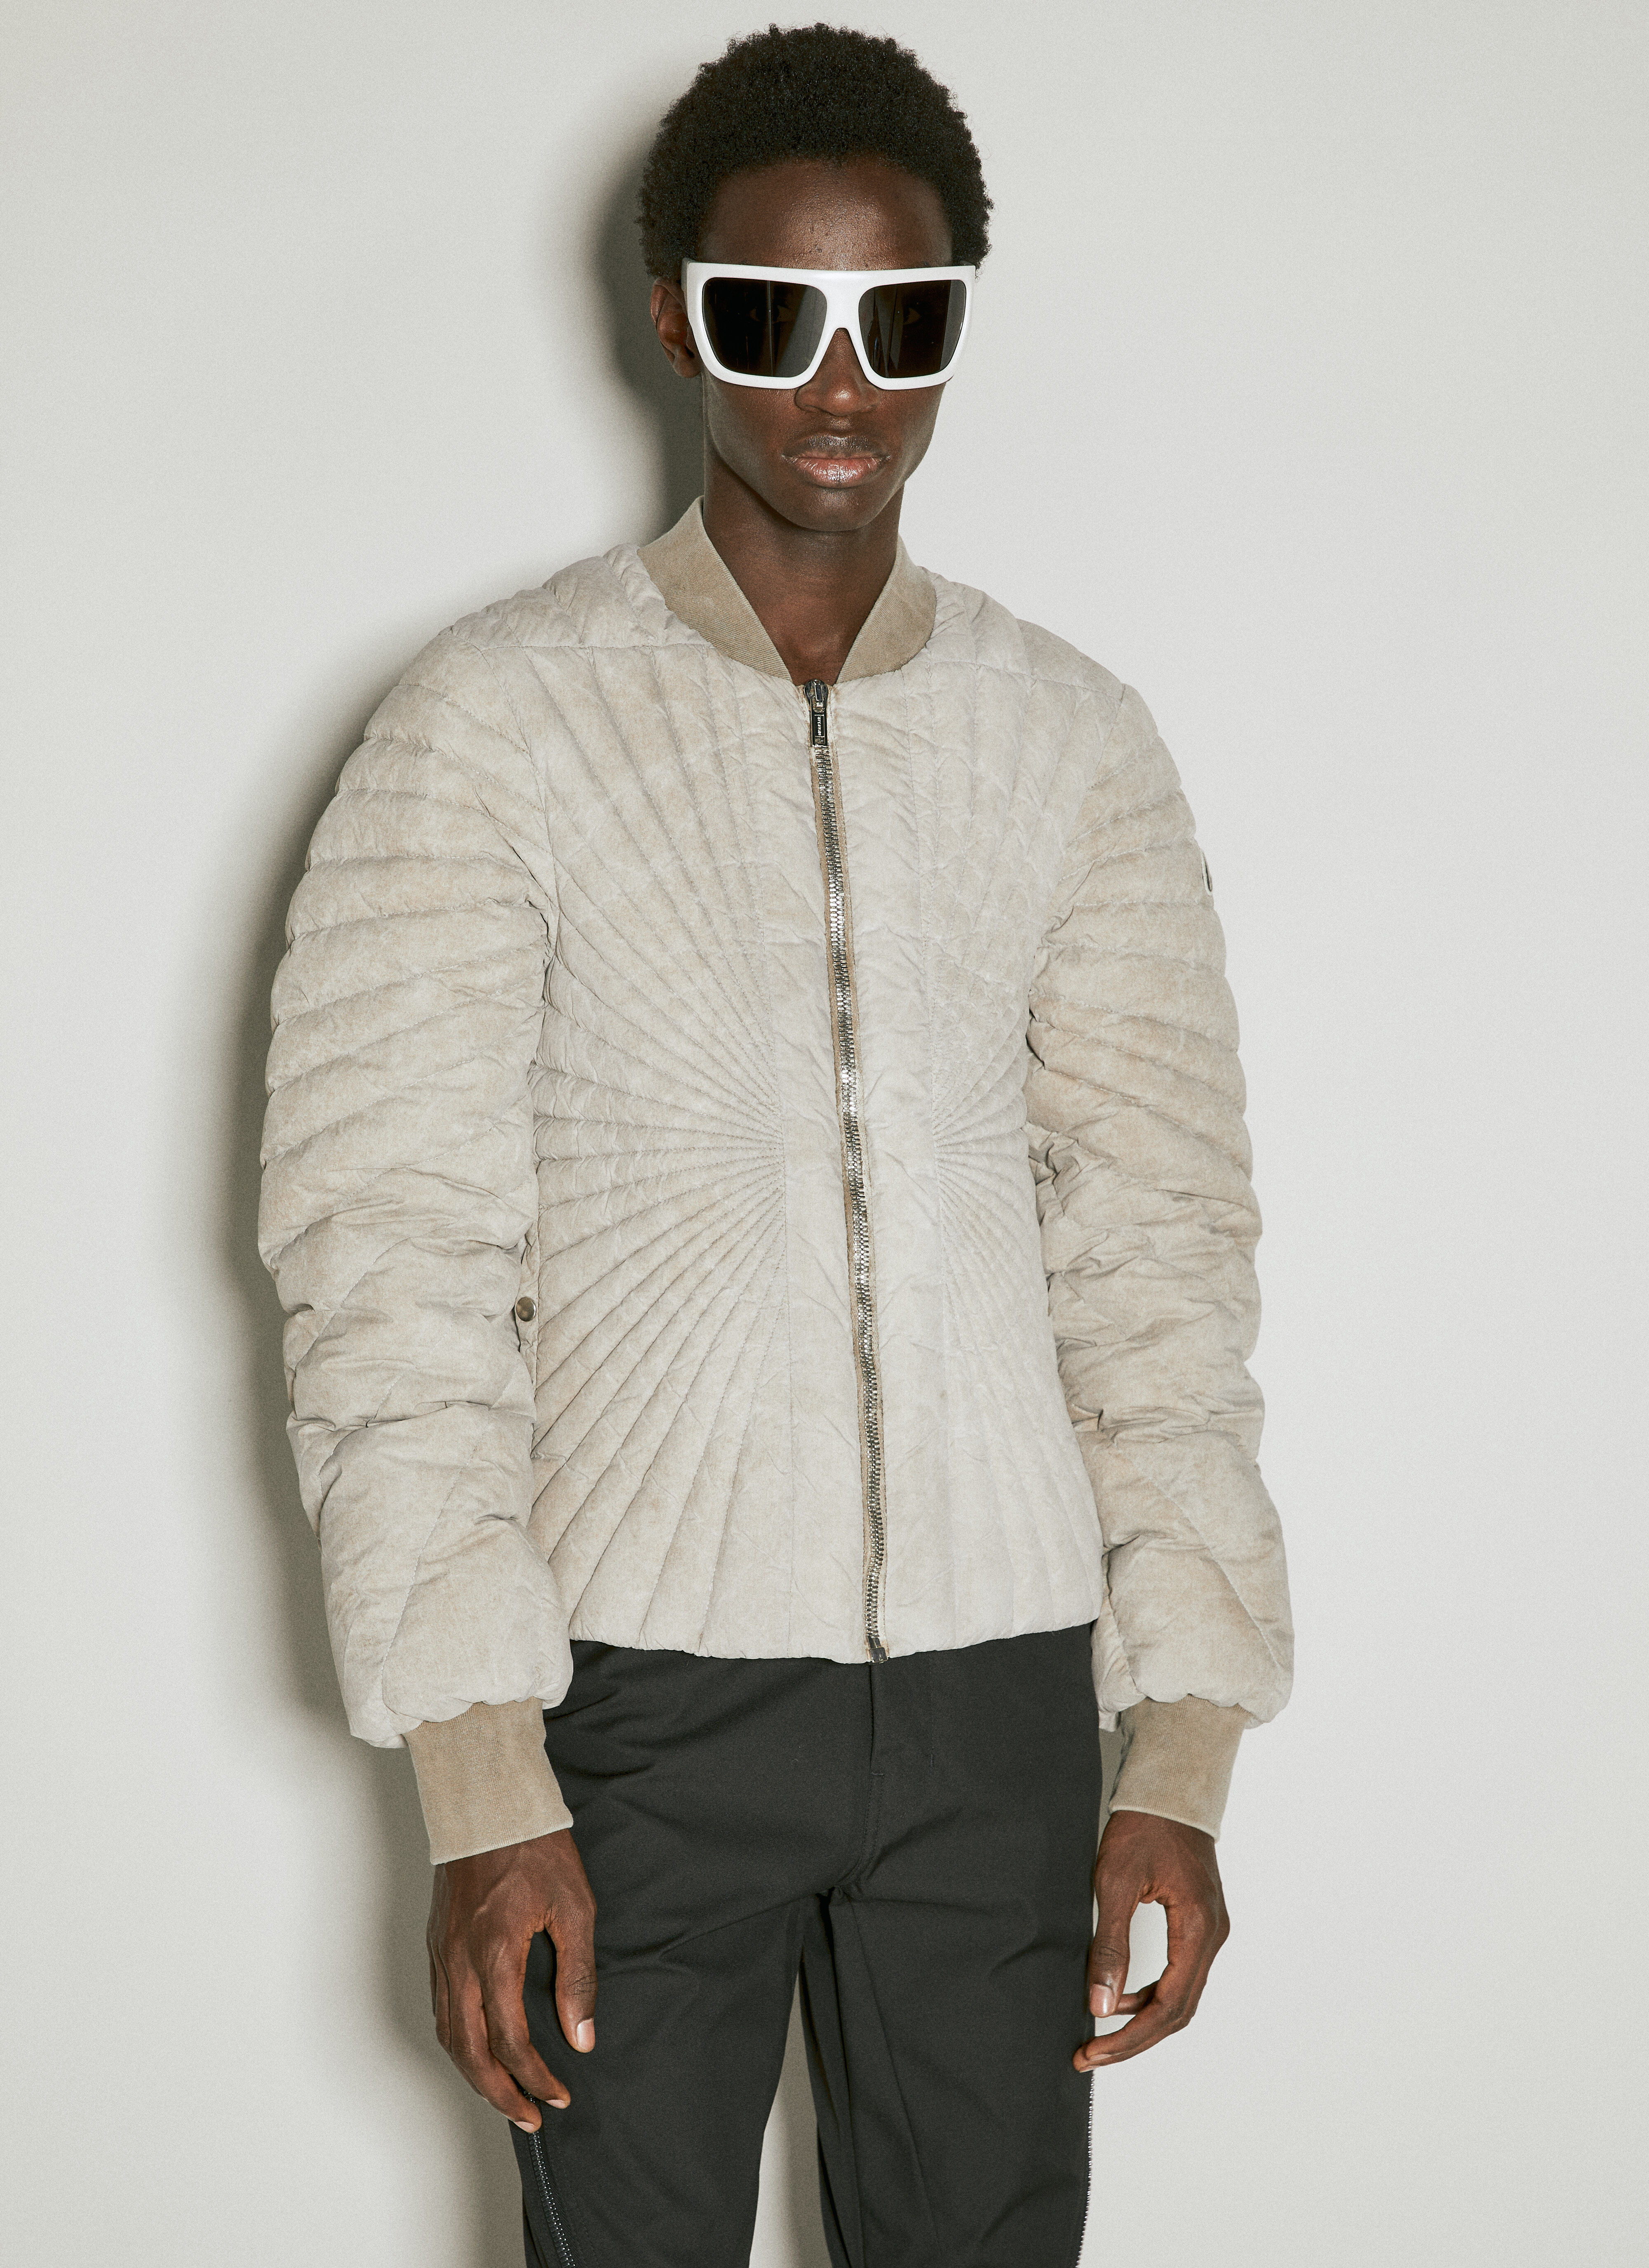 Moncler x Roc Nation designed by Jay-Z Radiance 羽绒飞行夹克 黑色 mrn0156002